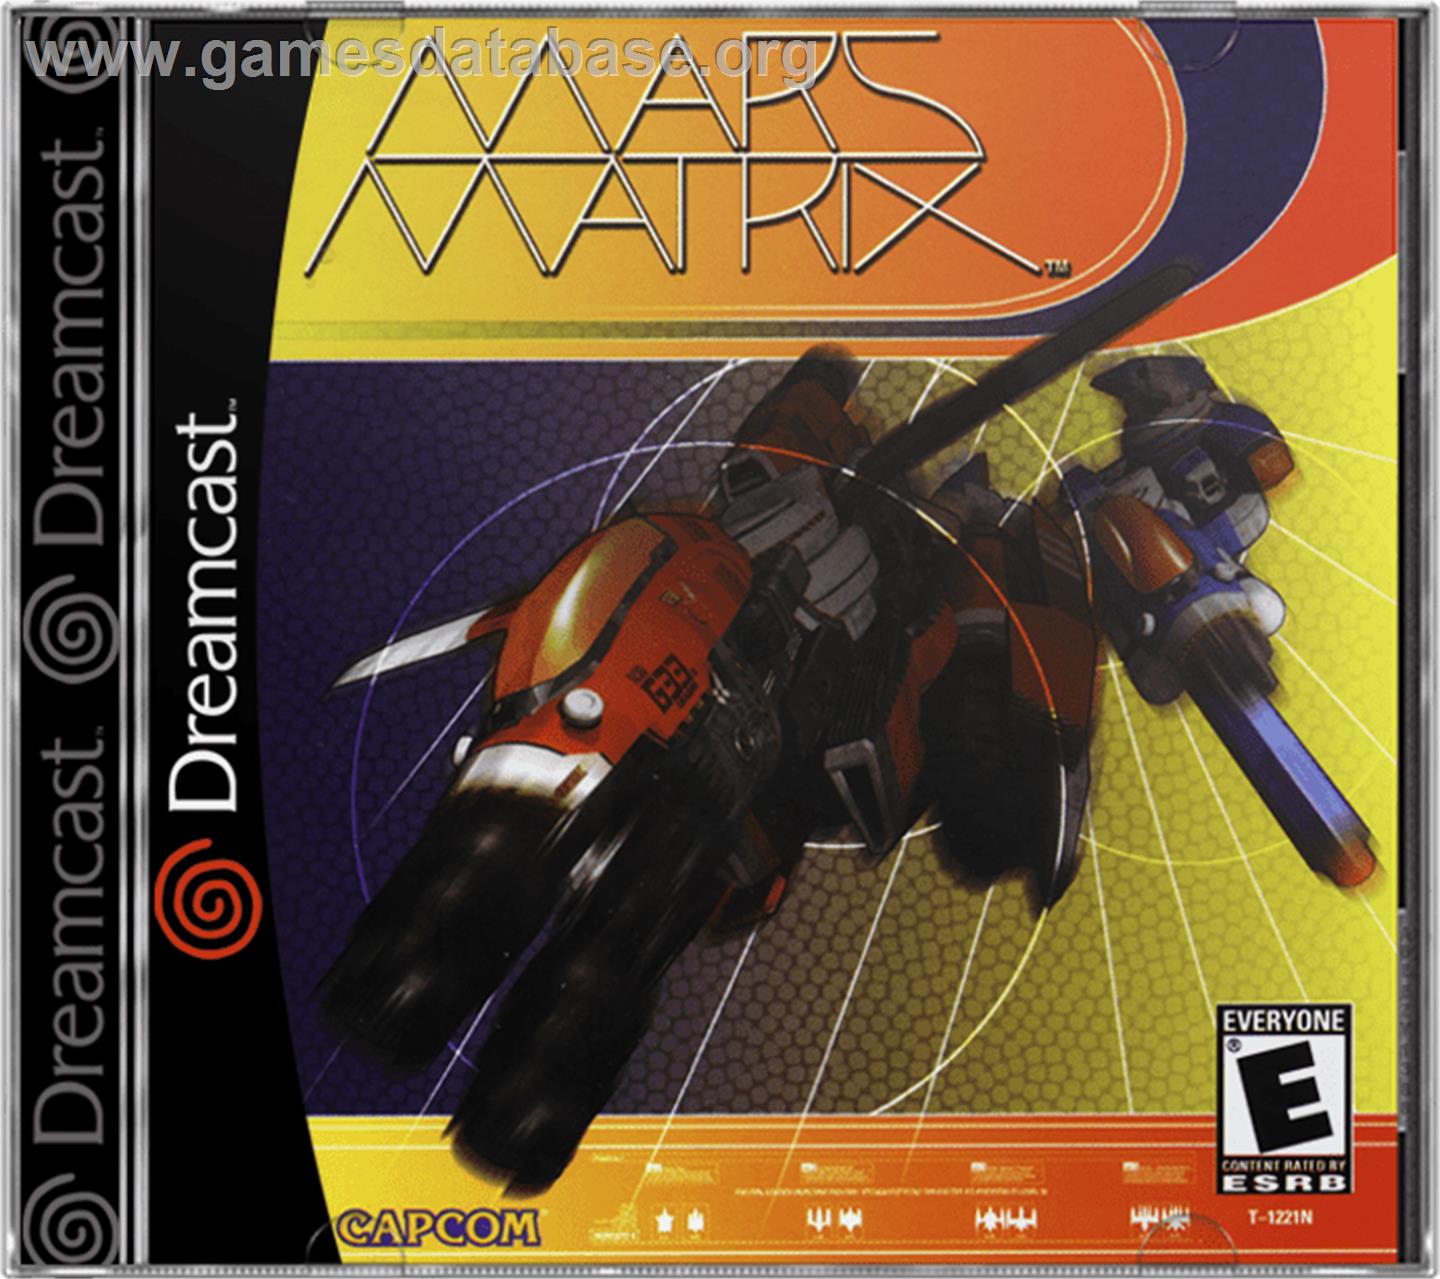 Mars Matrix - Sega Dreamcast - Artwork - Box